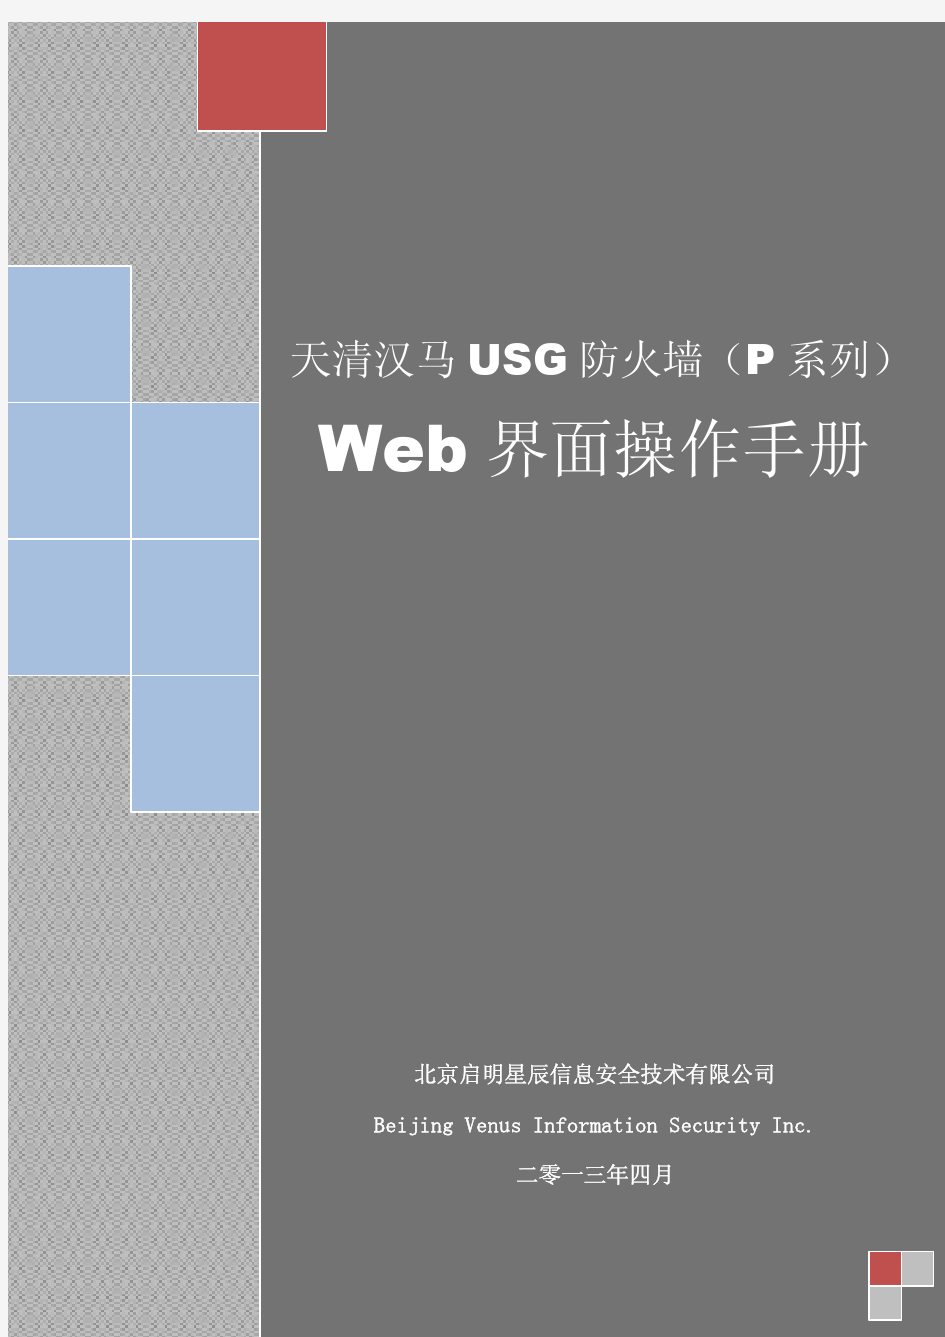 天清汉马USG防火墙(P系列)Web界面操作手册